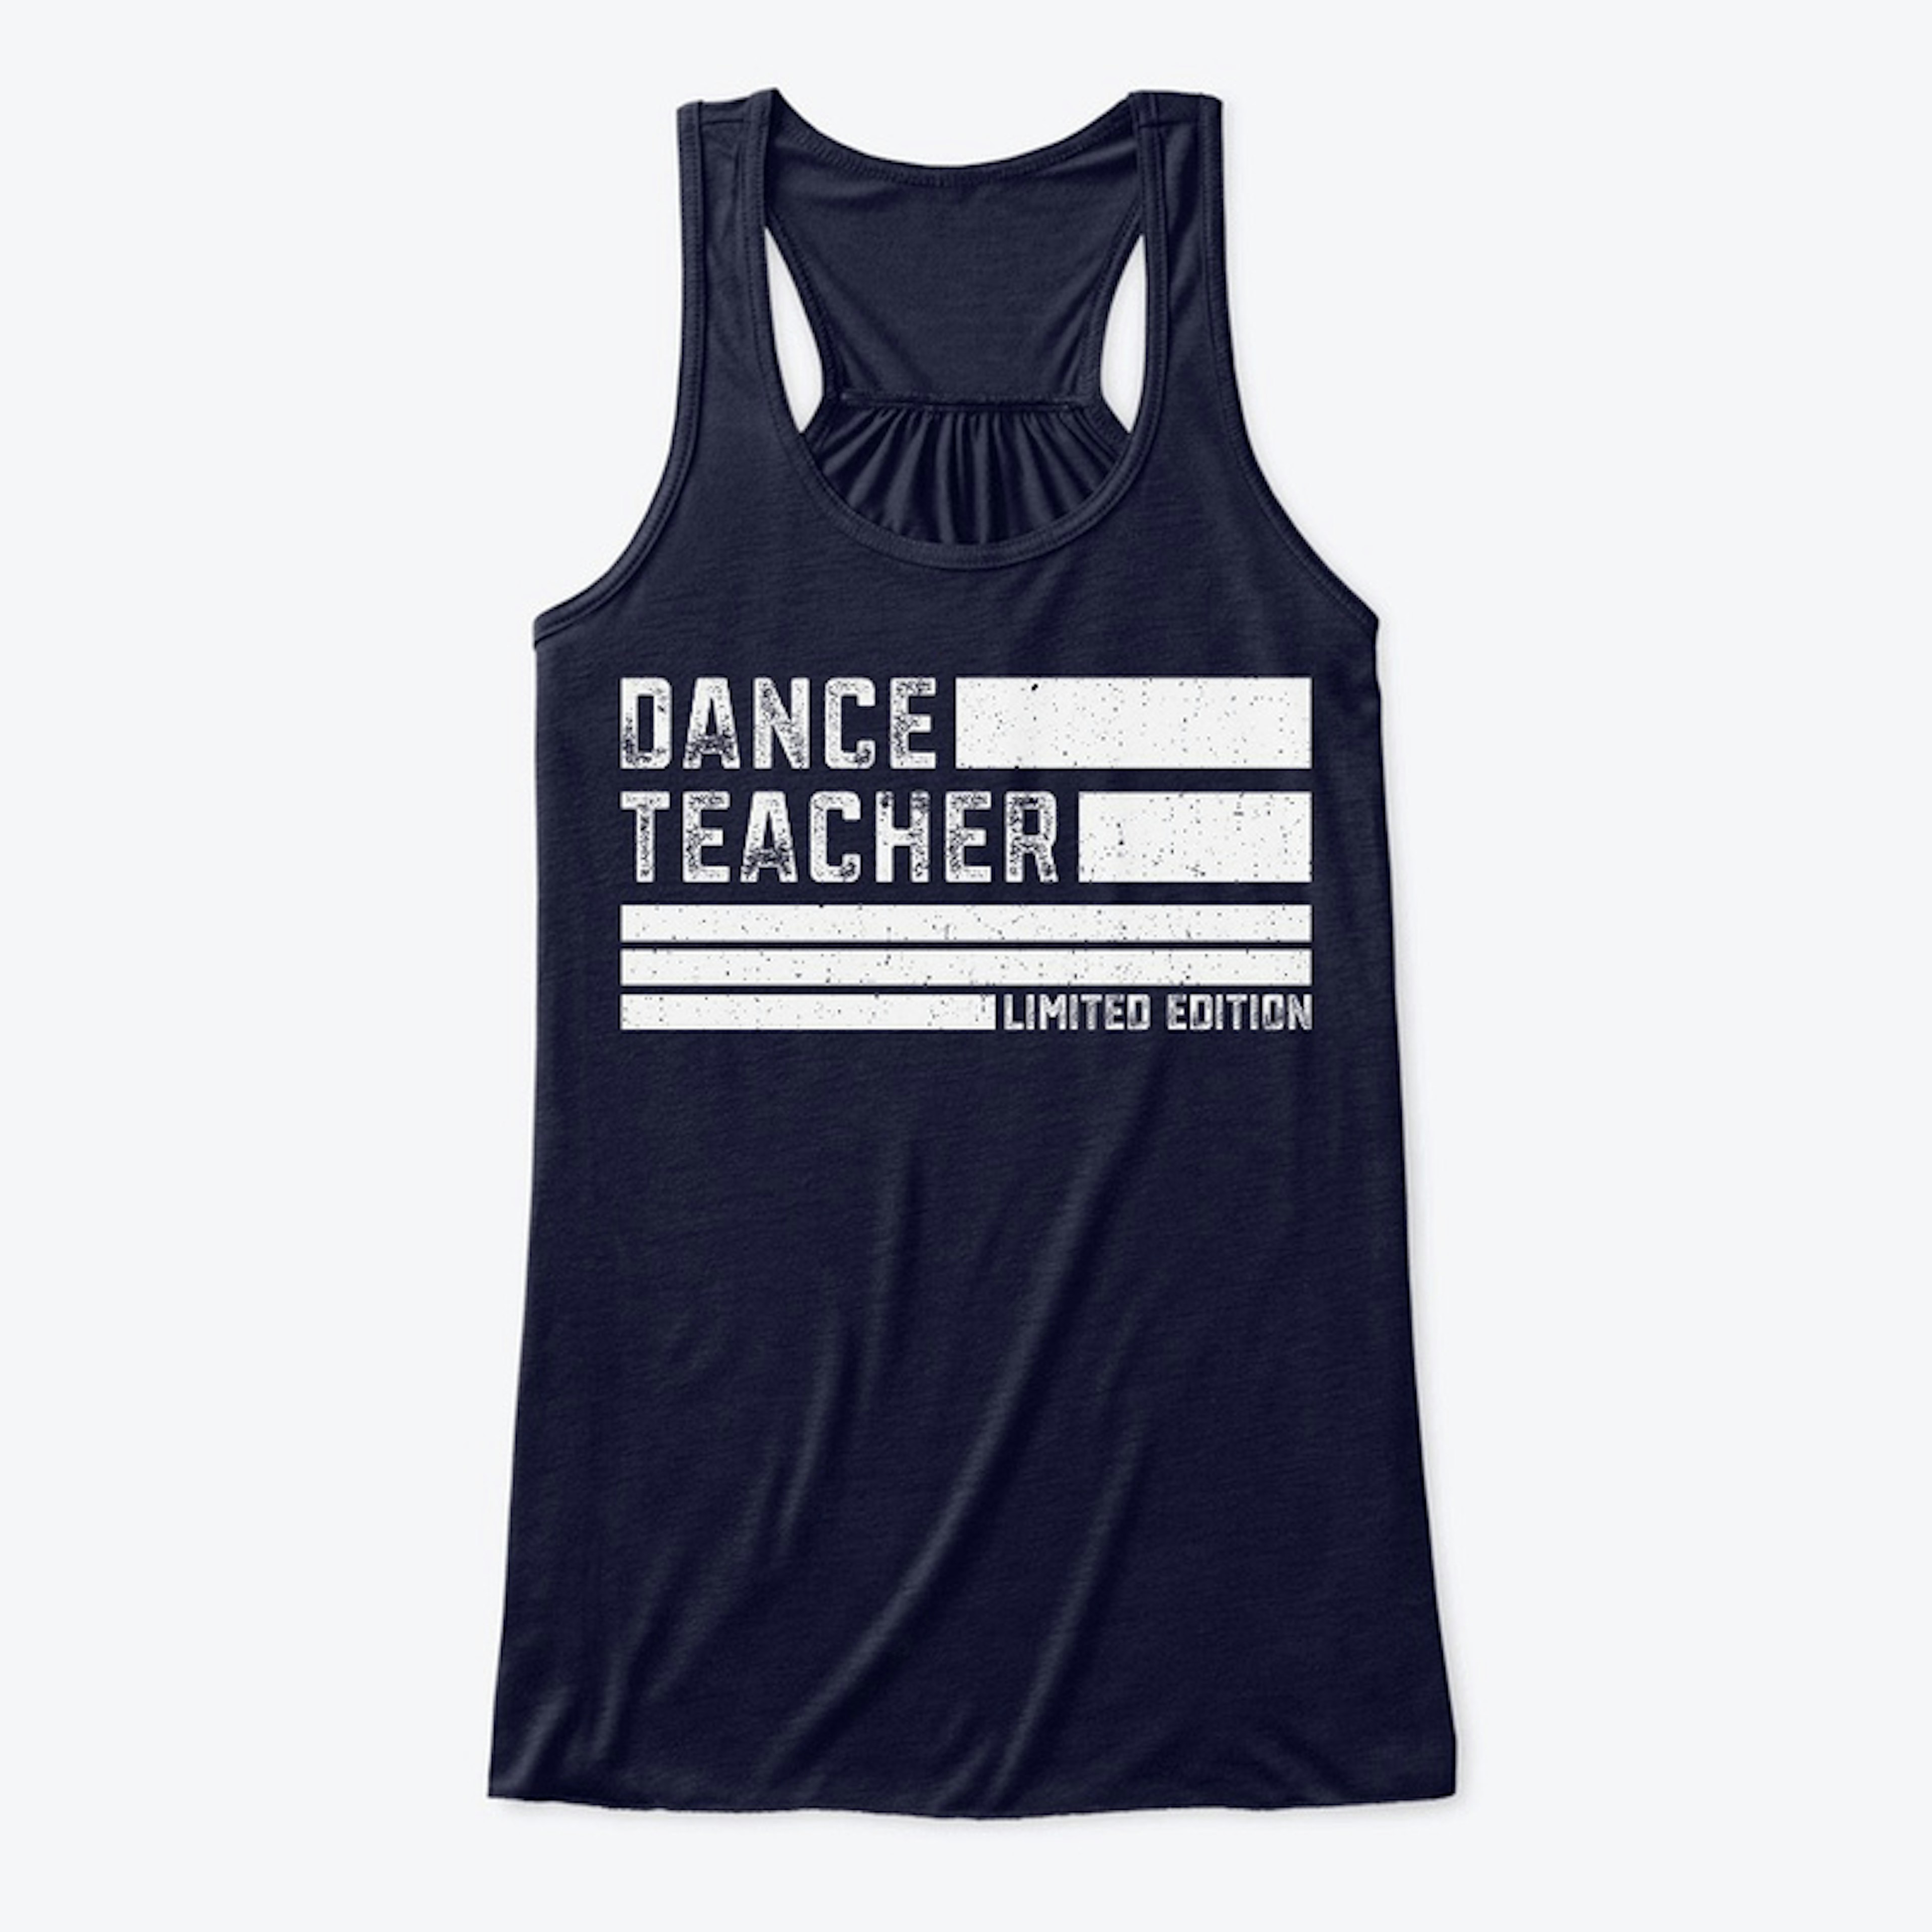 Dance Teacher Limited Edition